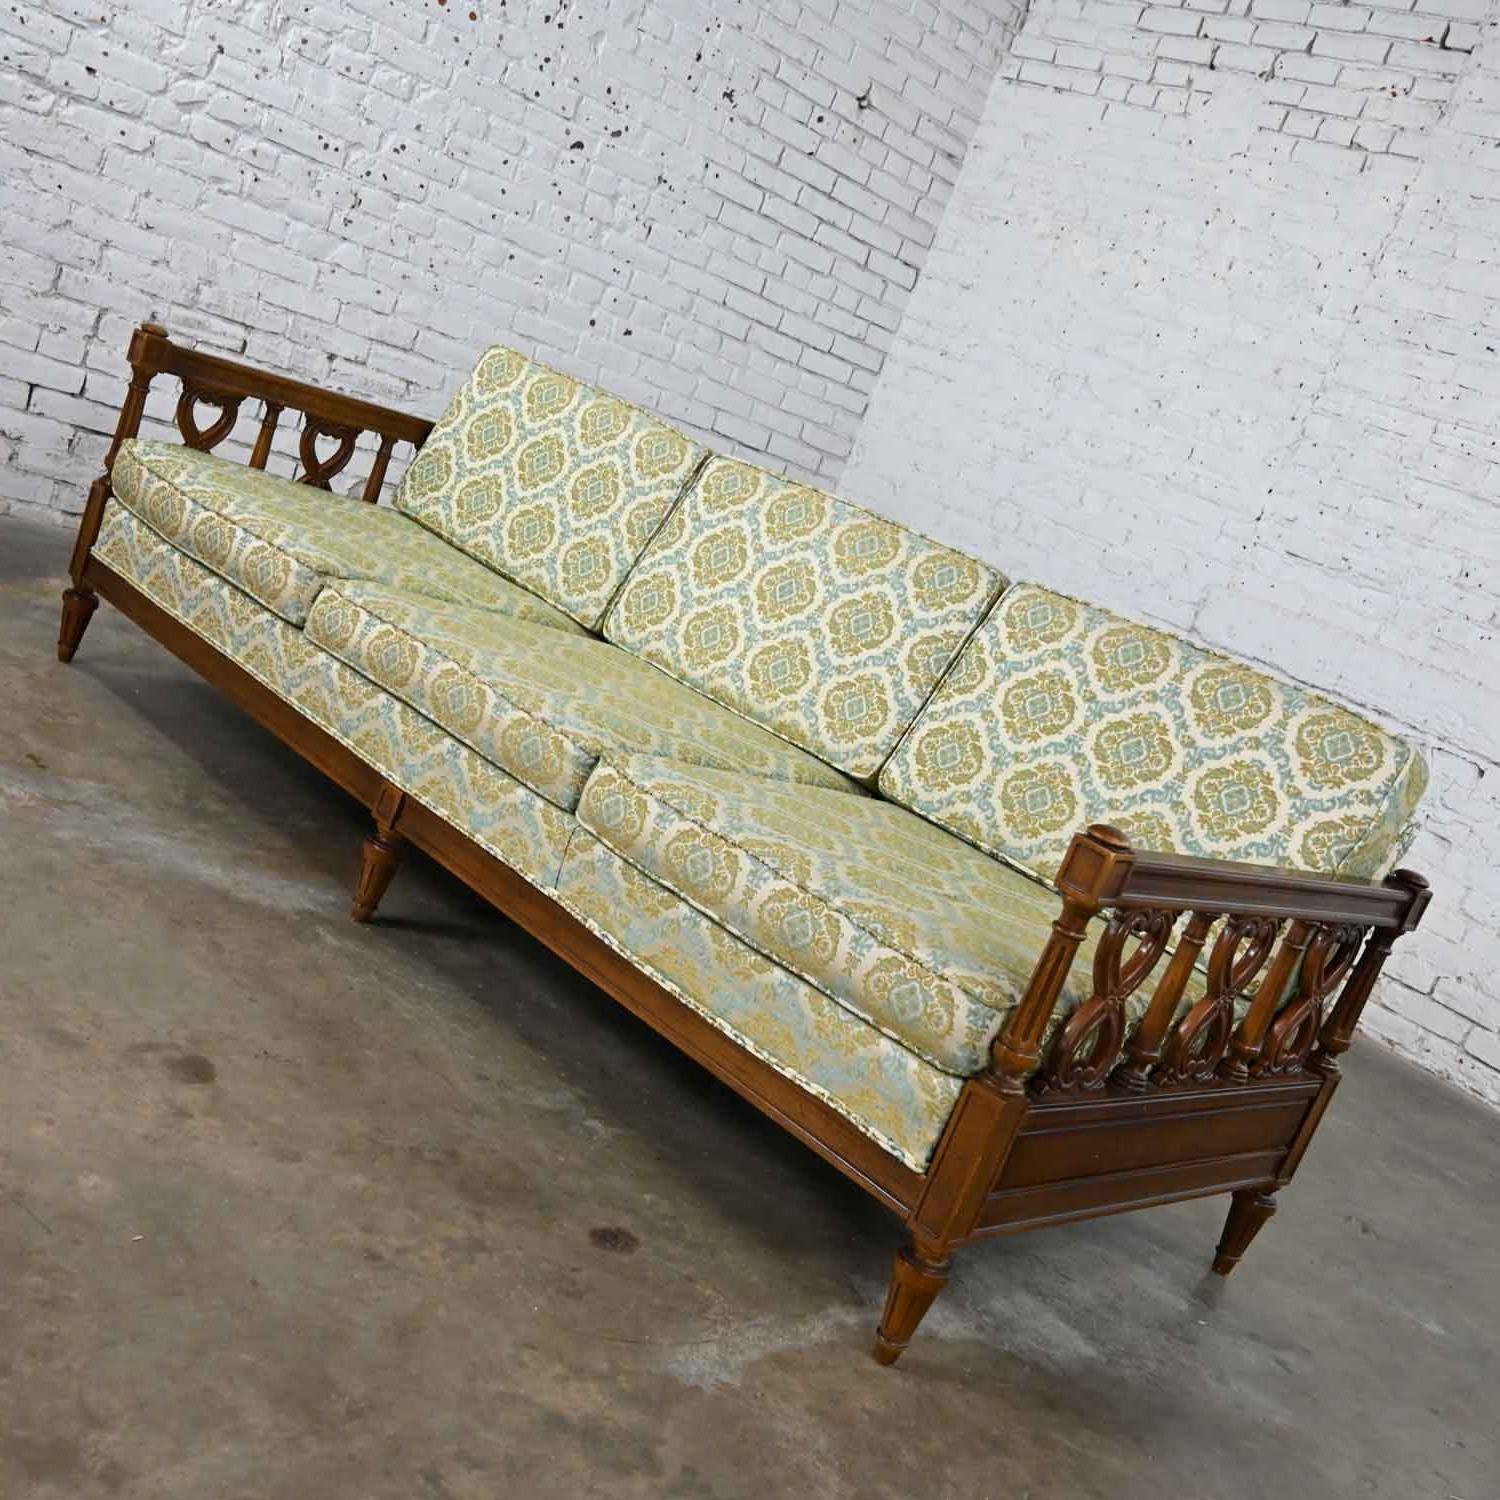 Vintage Mediterranean Spanish Revival Style Sofa Wood Details by American Furn 1